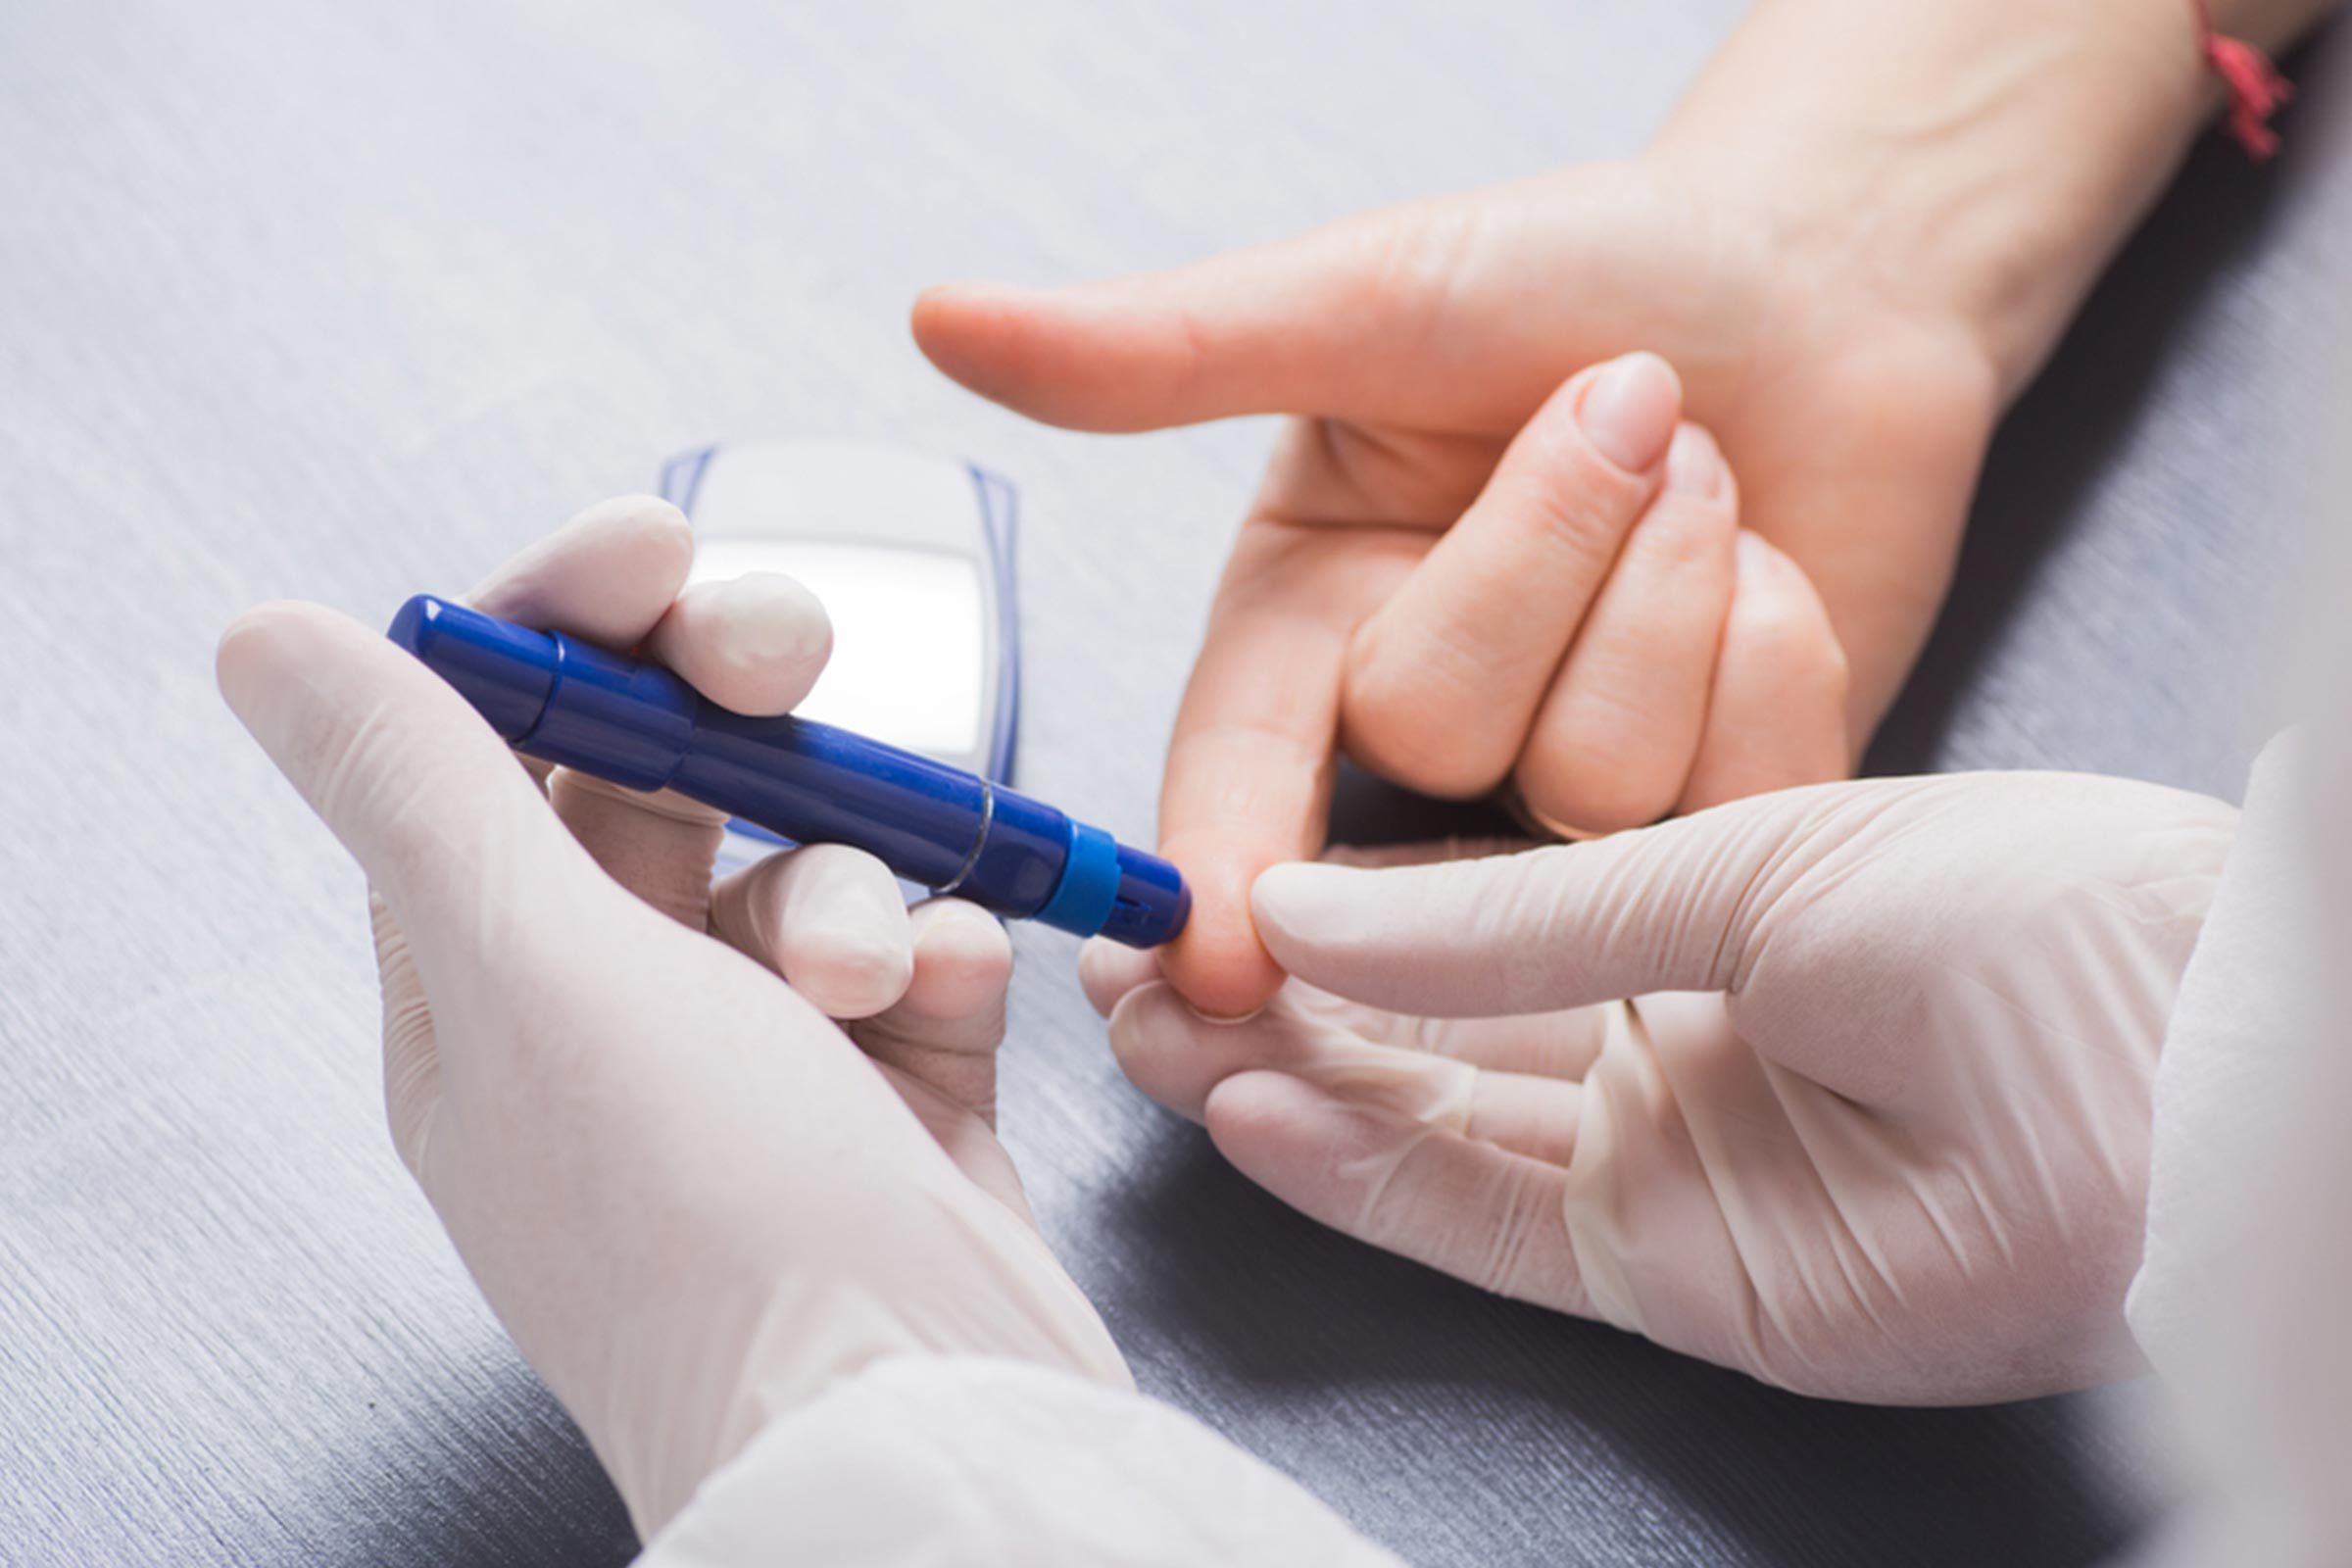 40 Easy Ways to Help Prevent Type 2 Diabetes